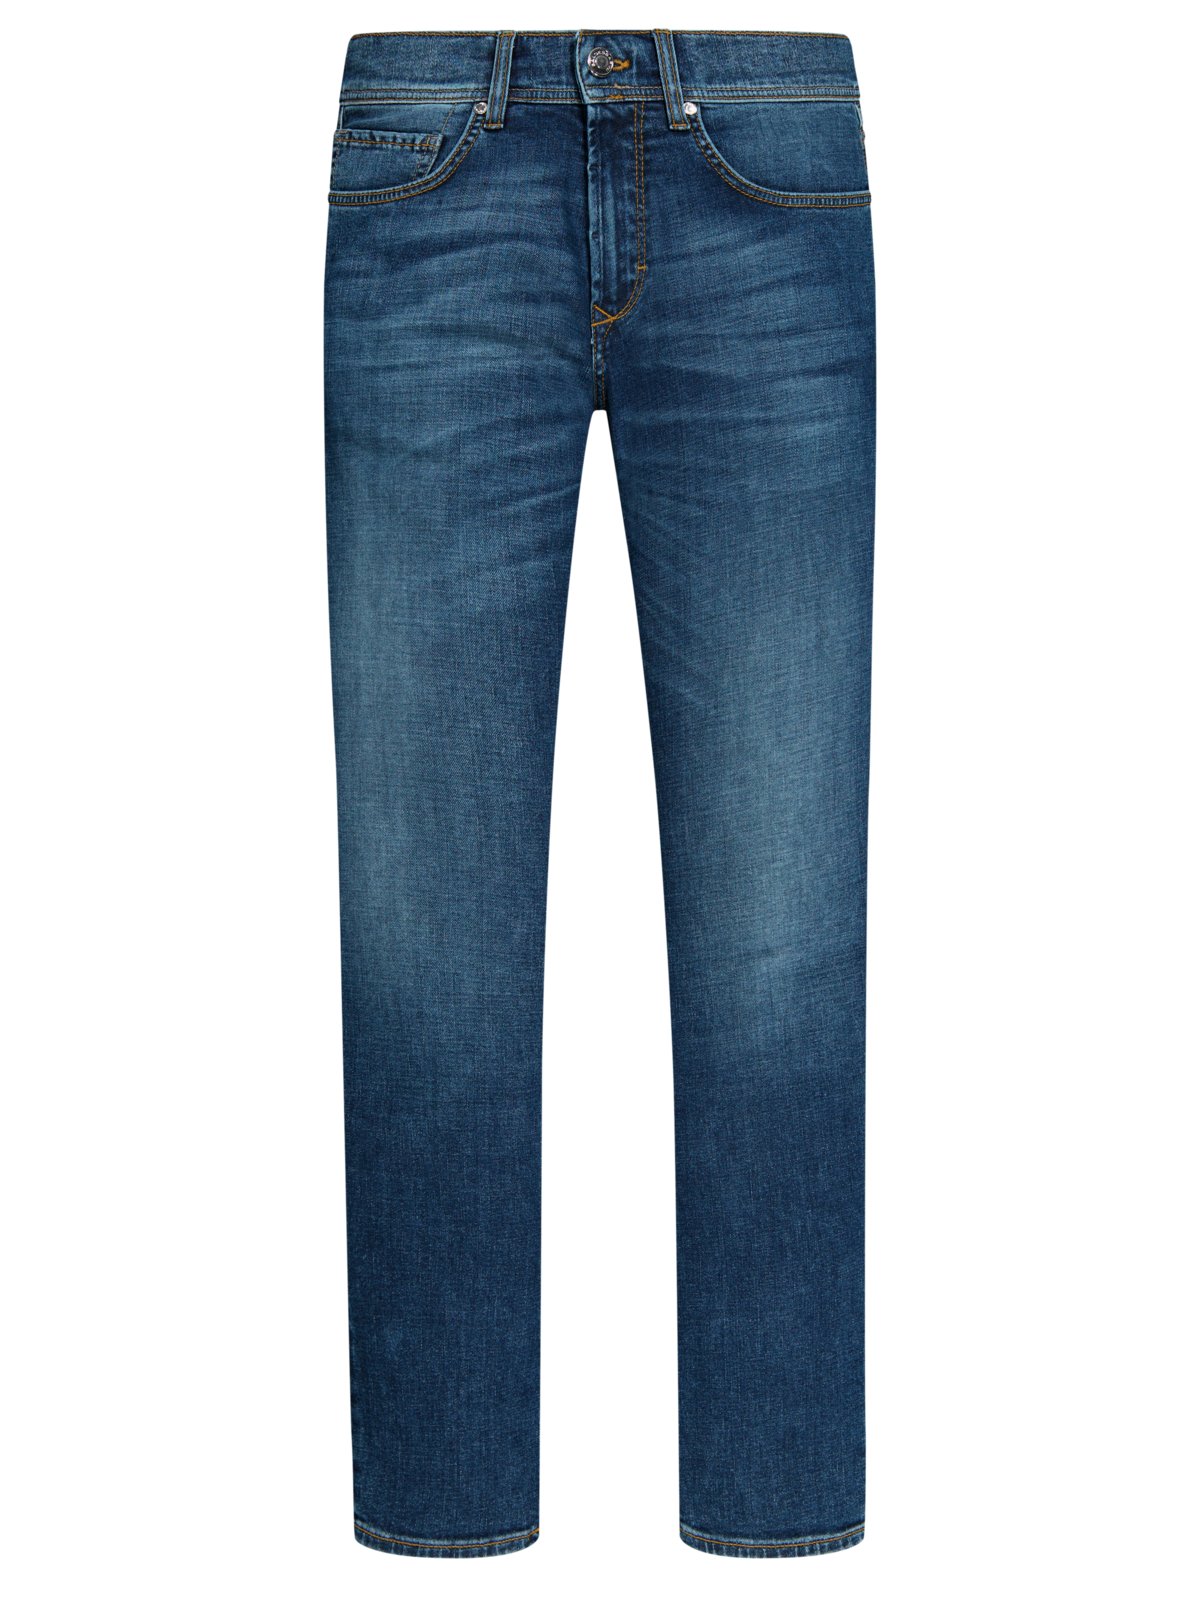 Baldessarini 5-Pocket Jeans im washed-look, James